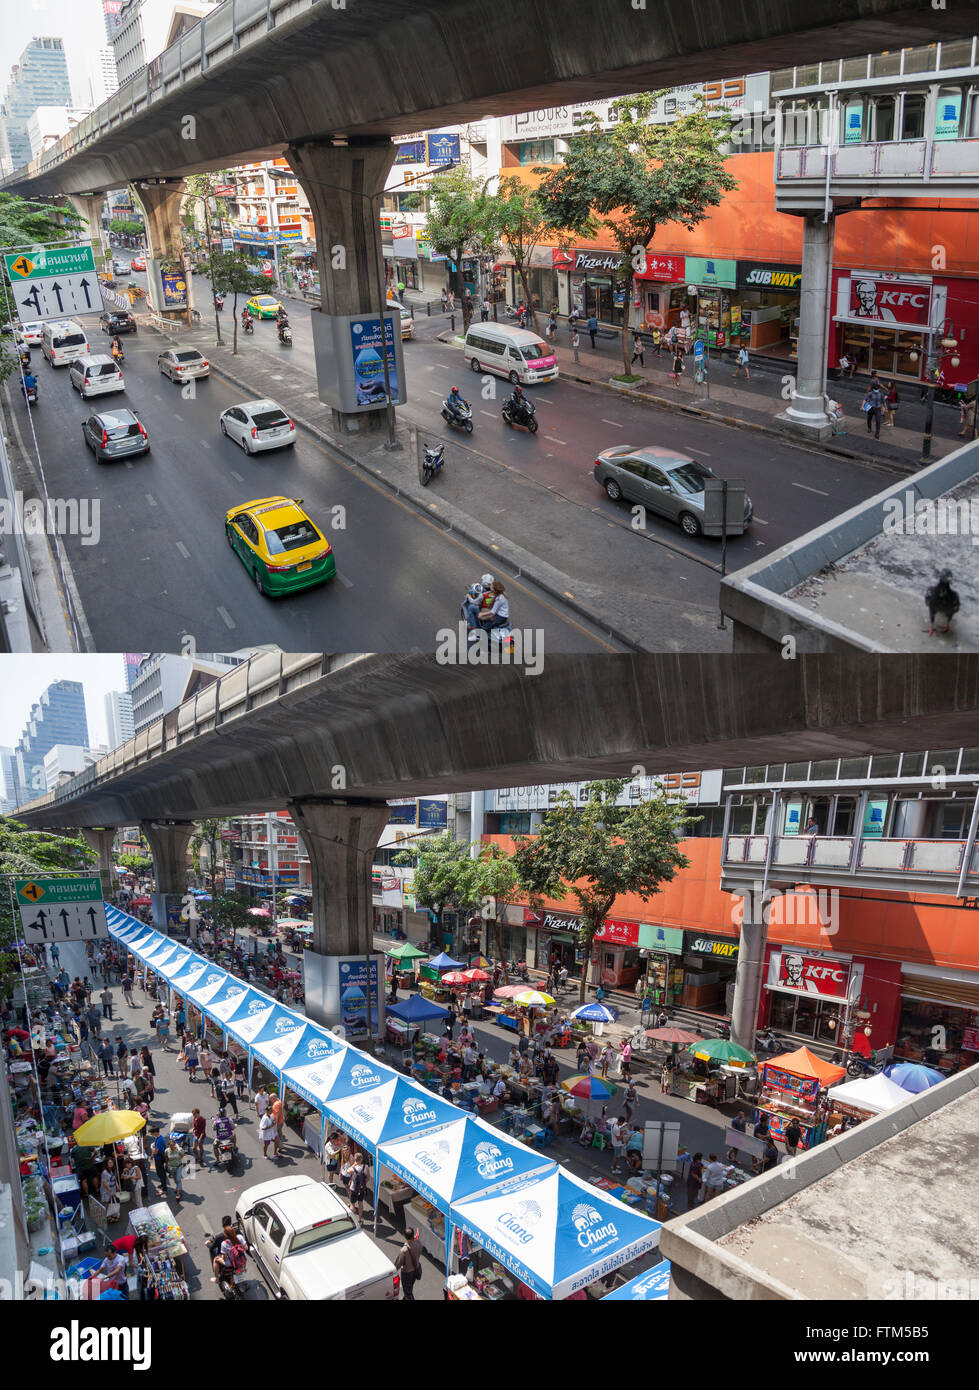 À Bangkok (Thaïlande), la Sala Daeng street en semaine (ci-dessus) et le dimanche (ci-dessous). La rue Daeng en semaine et le dimanche. Banque D'Images